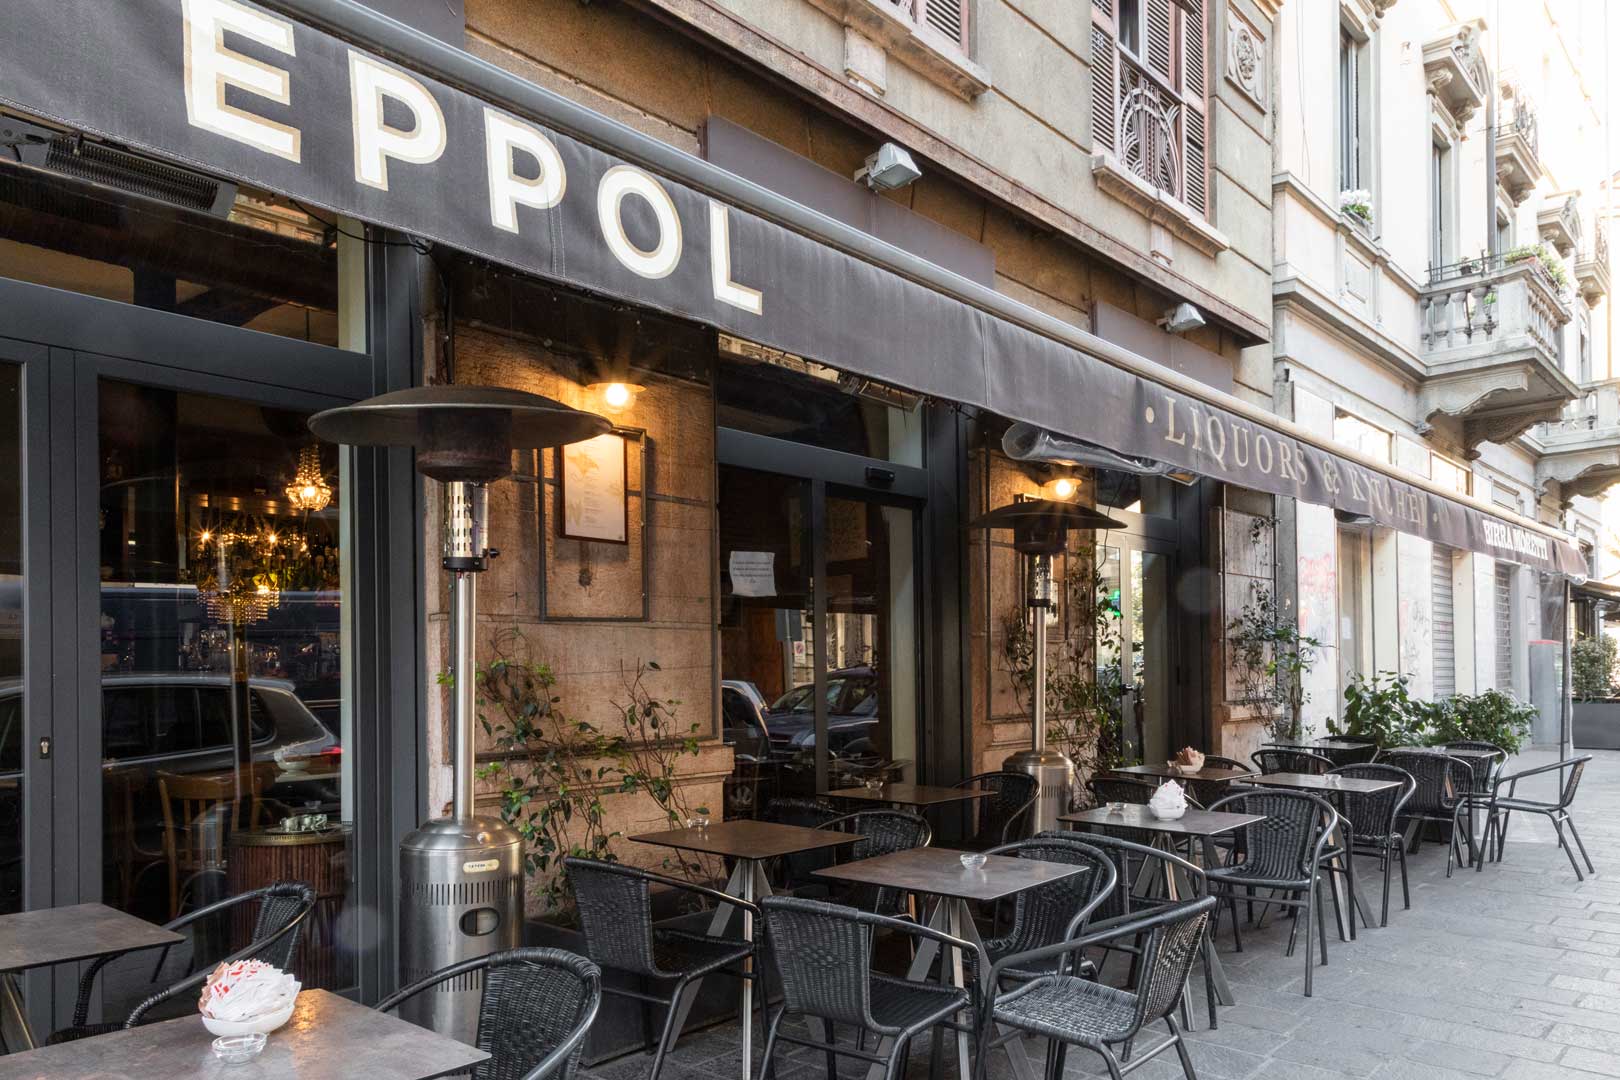 Eppol - Milano